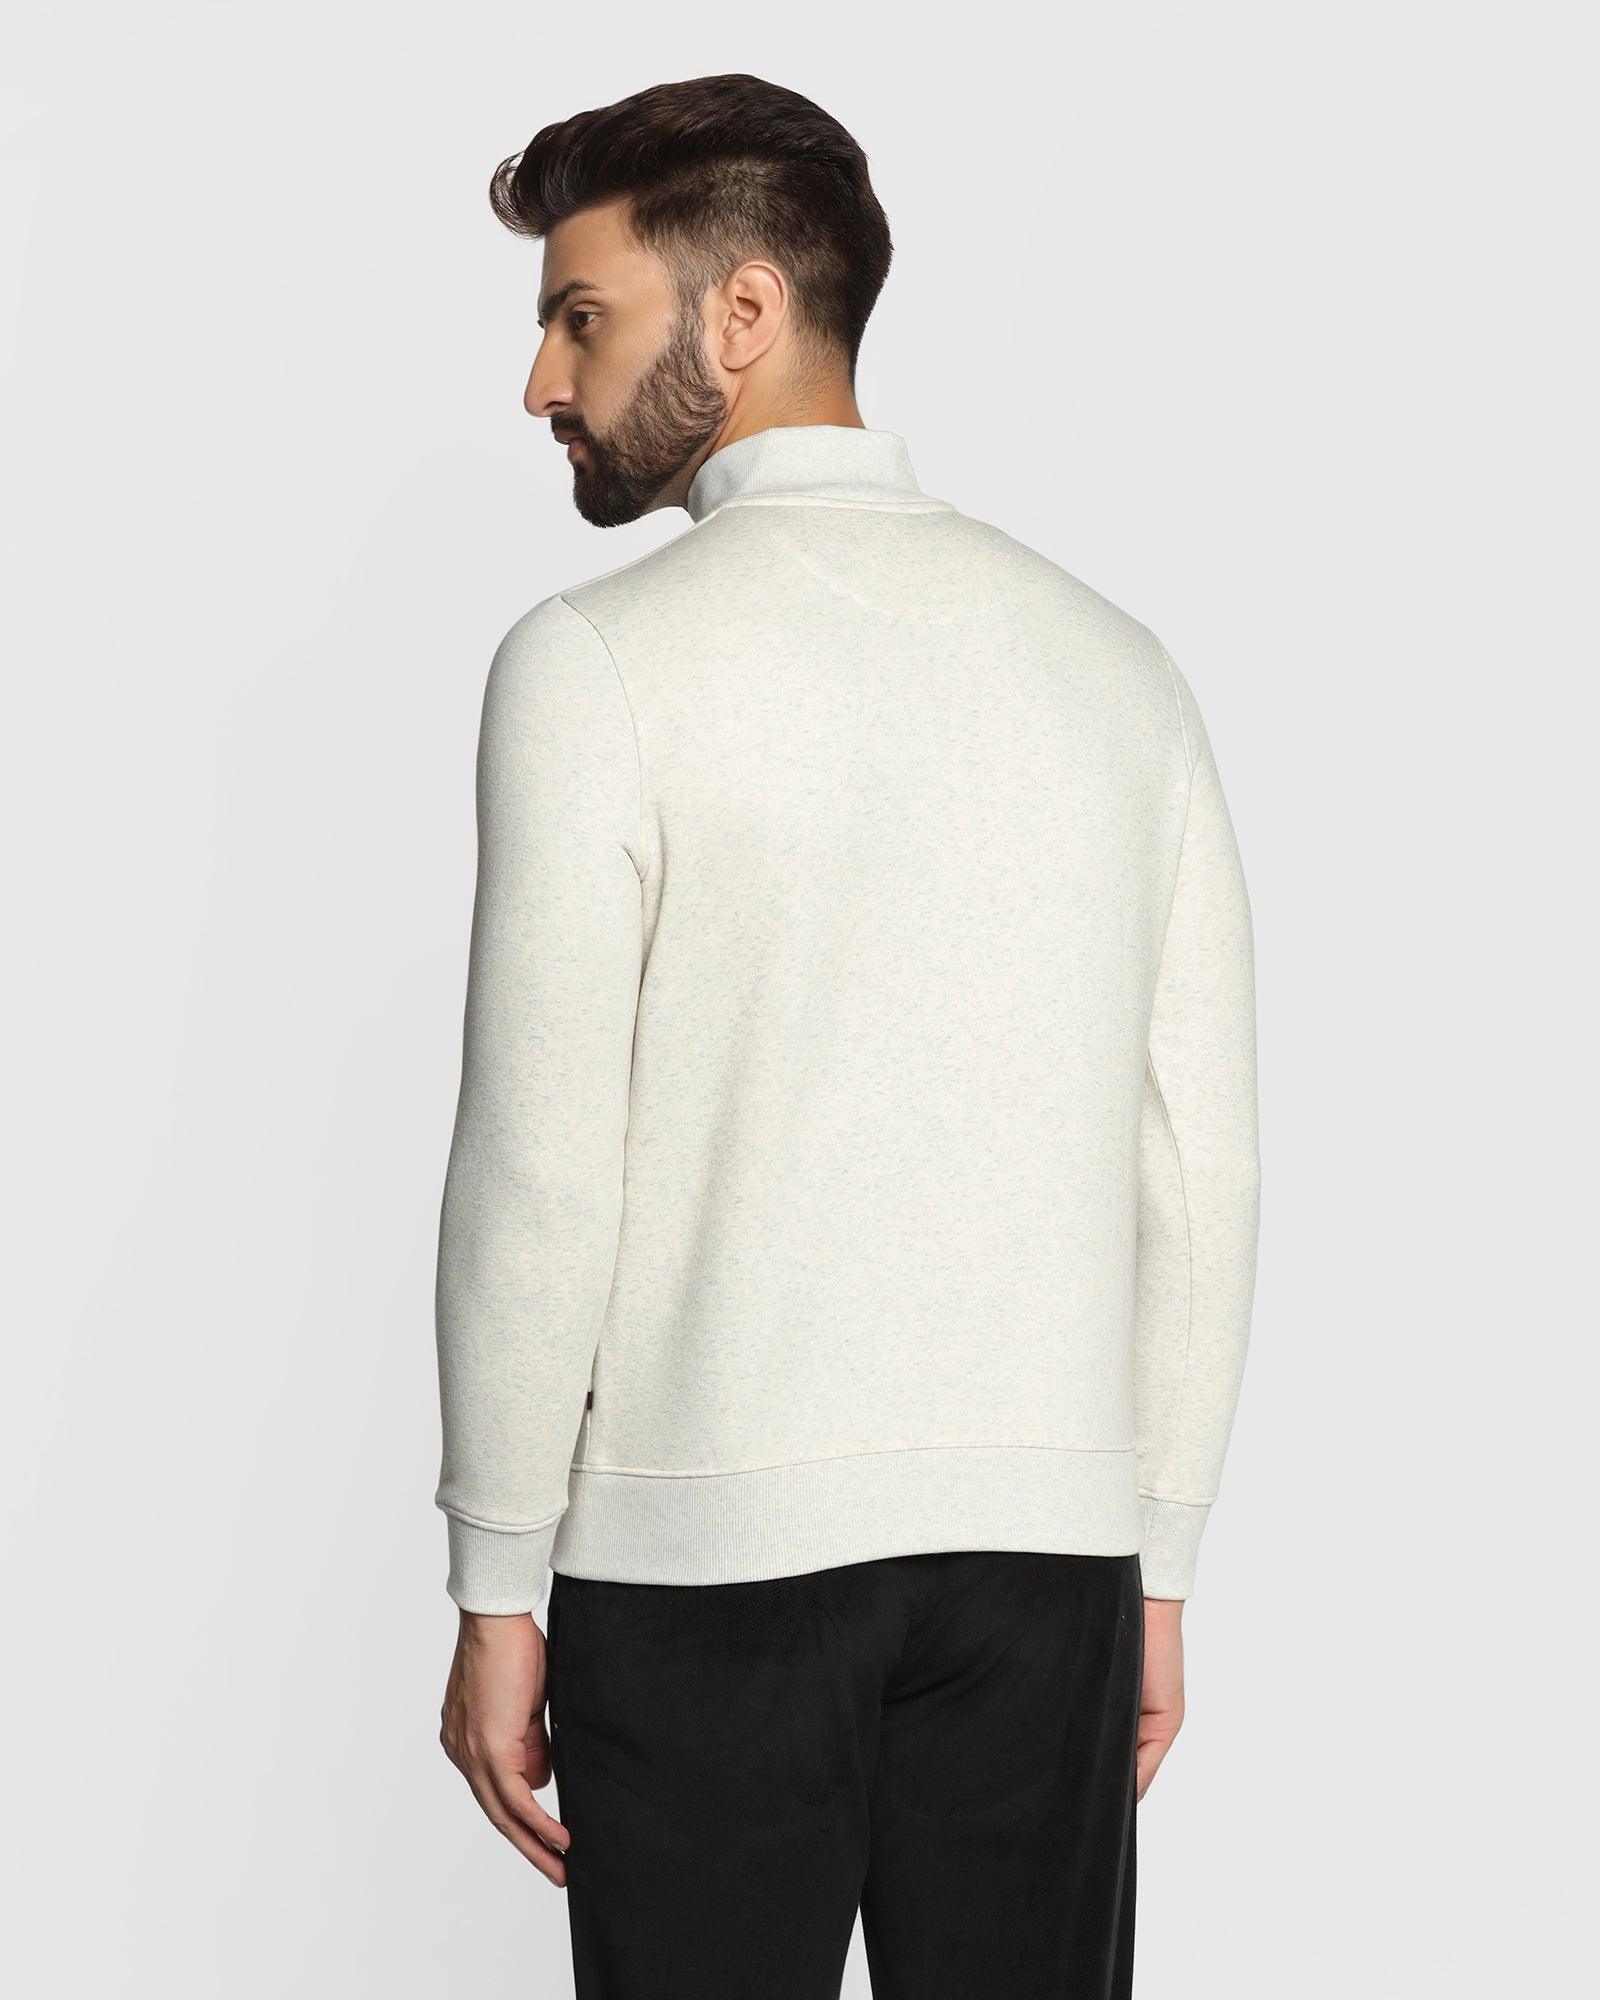 Stylized Collar Grey Melange Solid Sweatshirt - Jambo